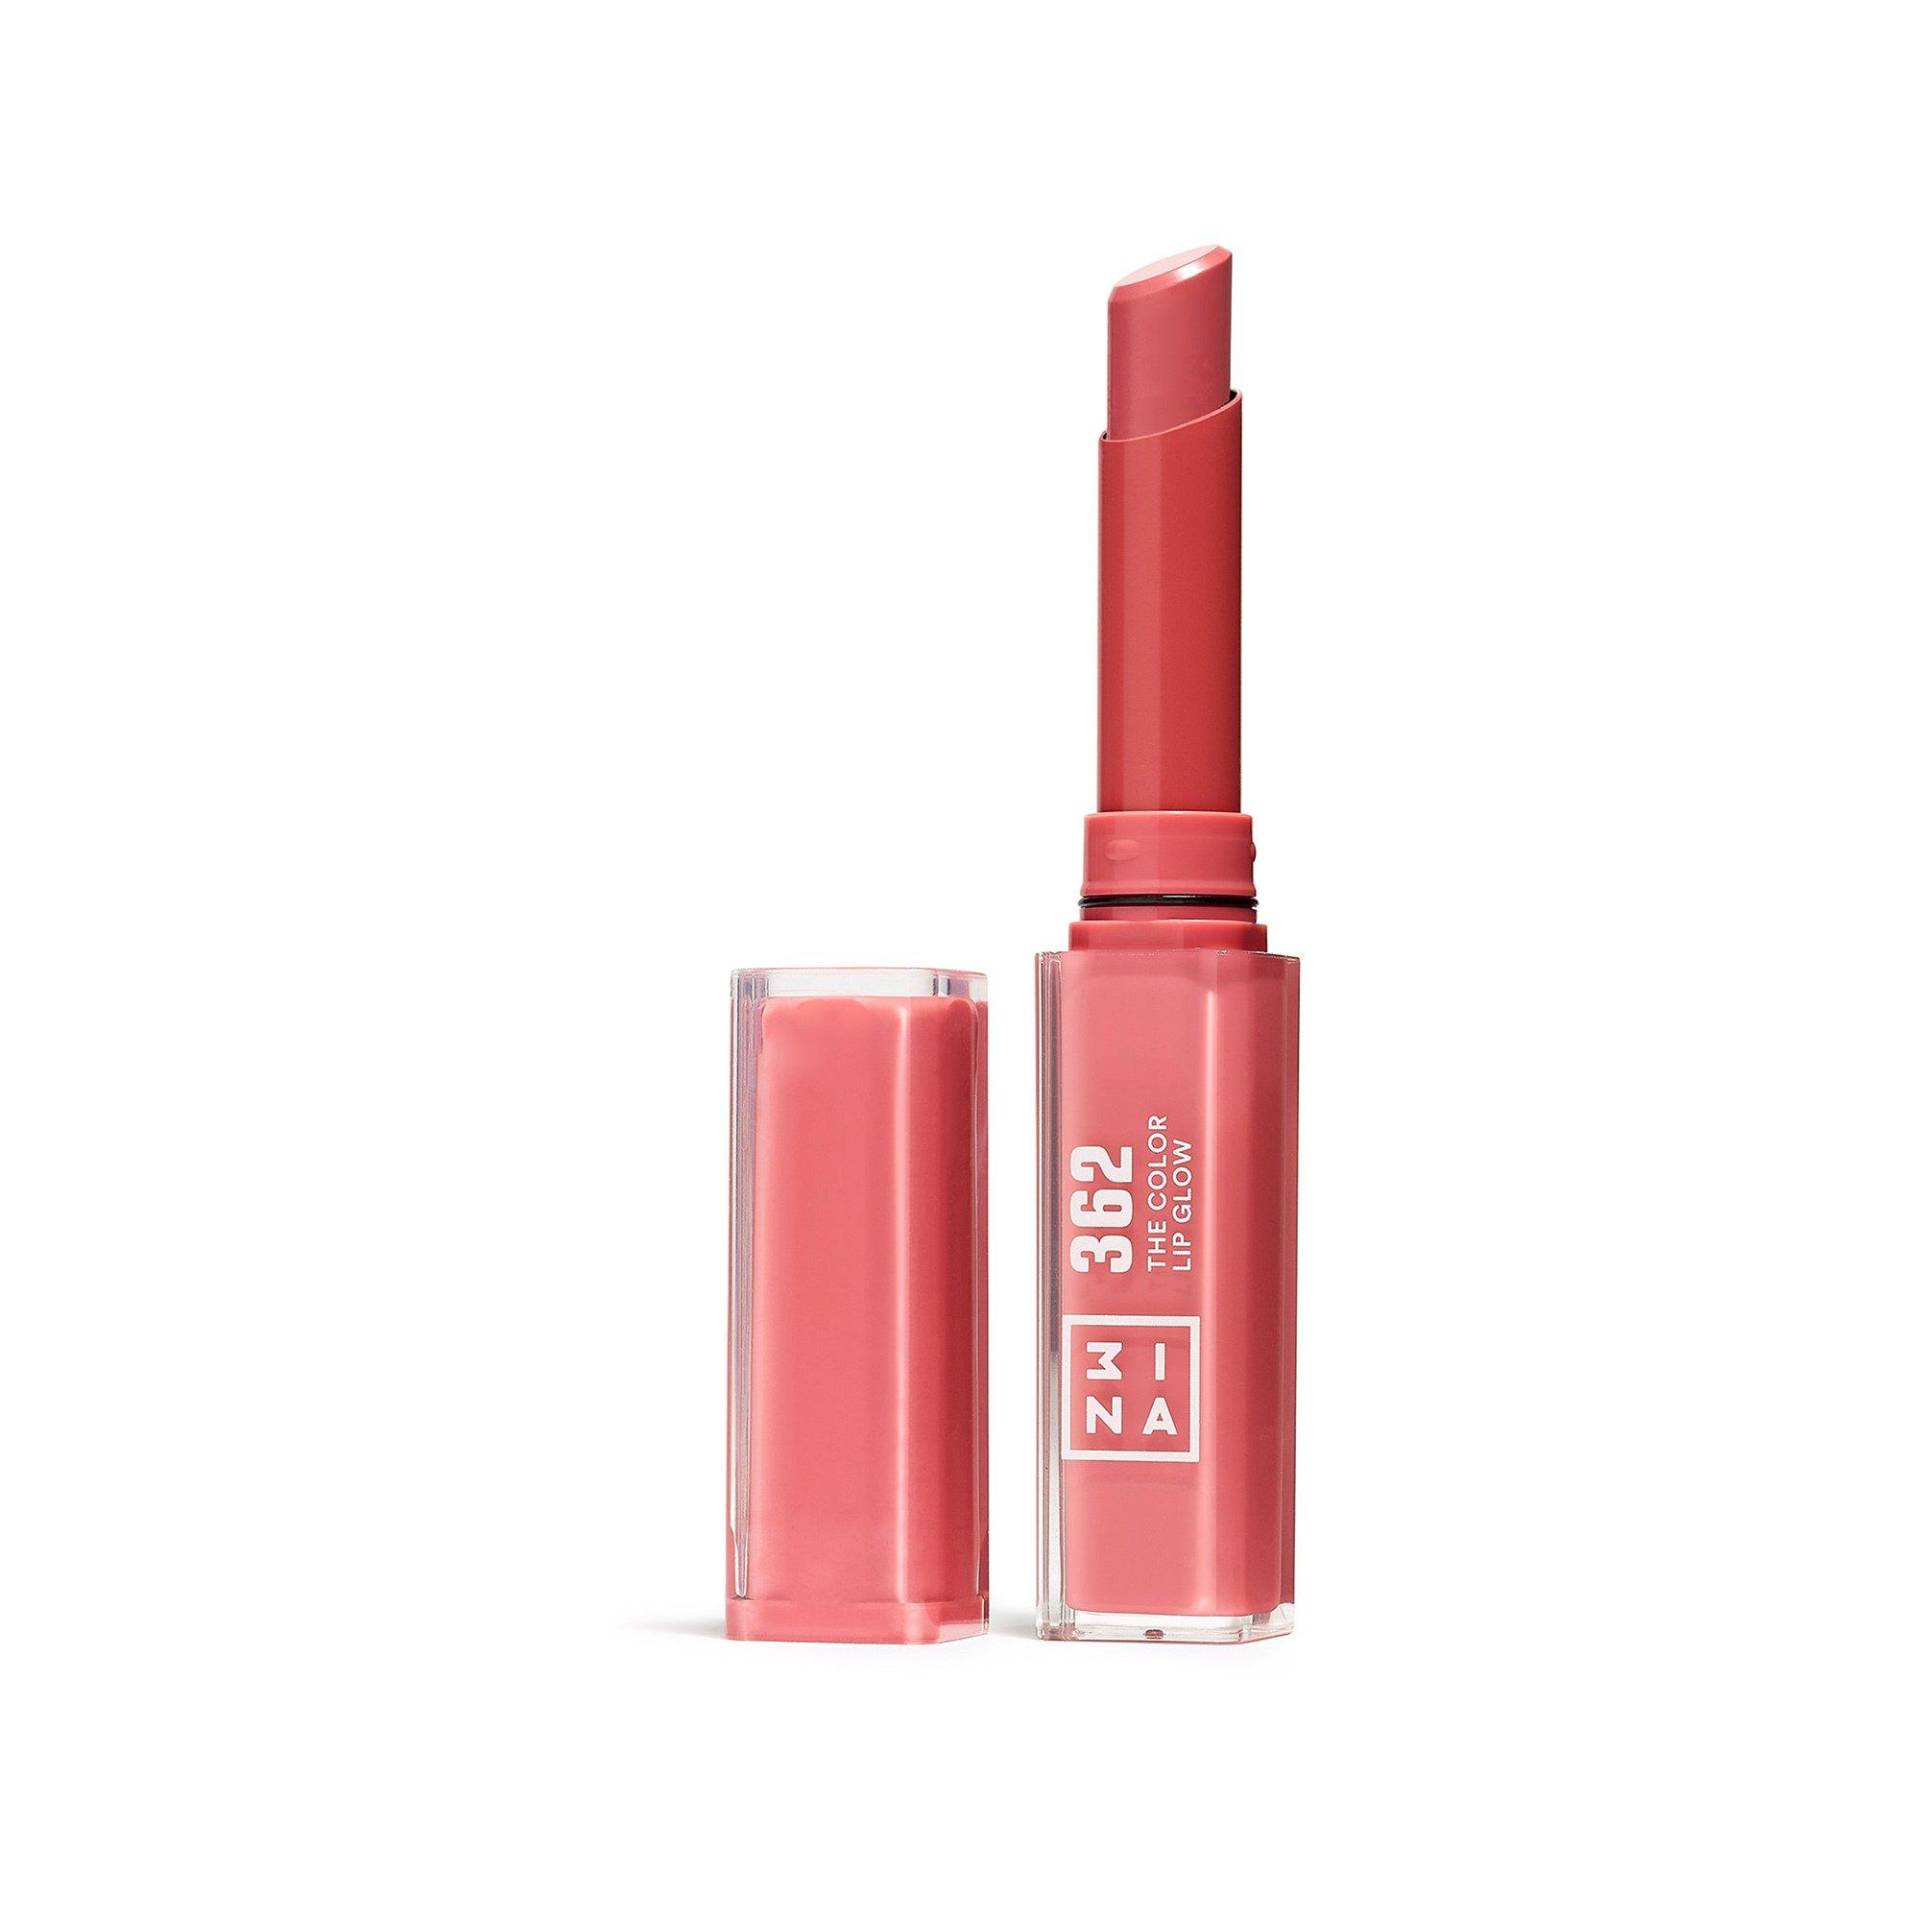 The Color Lip Glow Damen  Pink 1.6G von 3INA